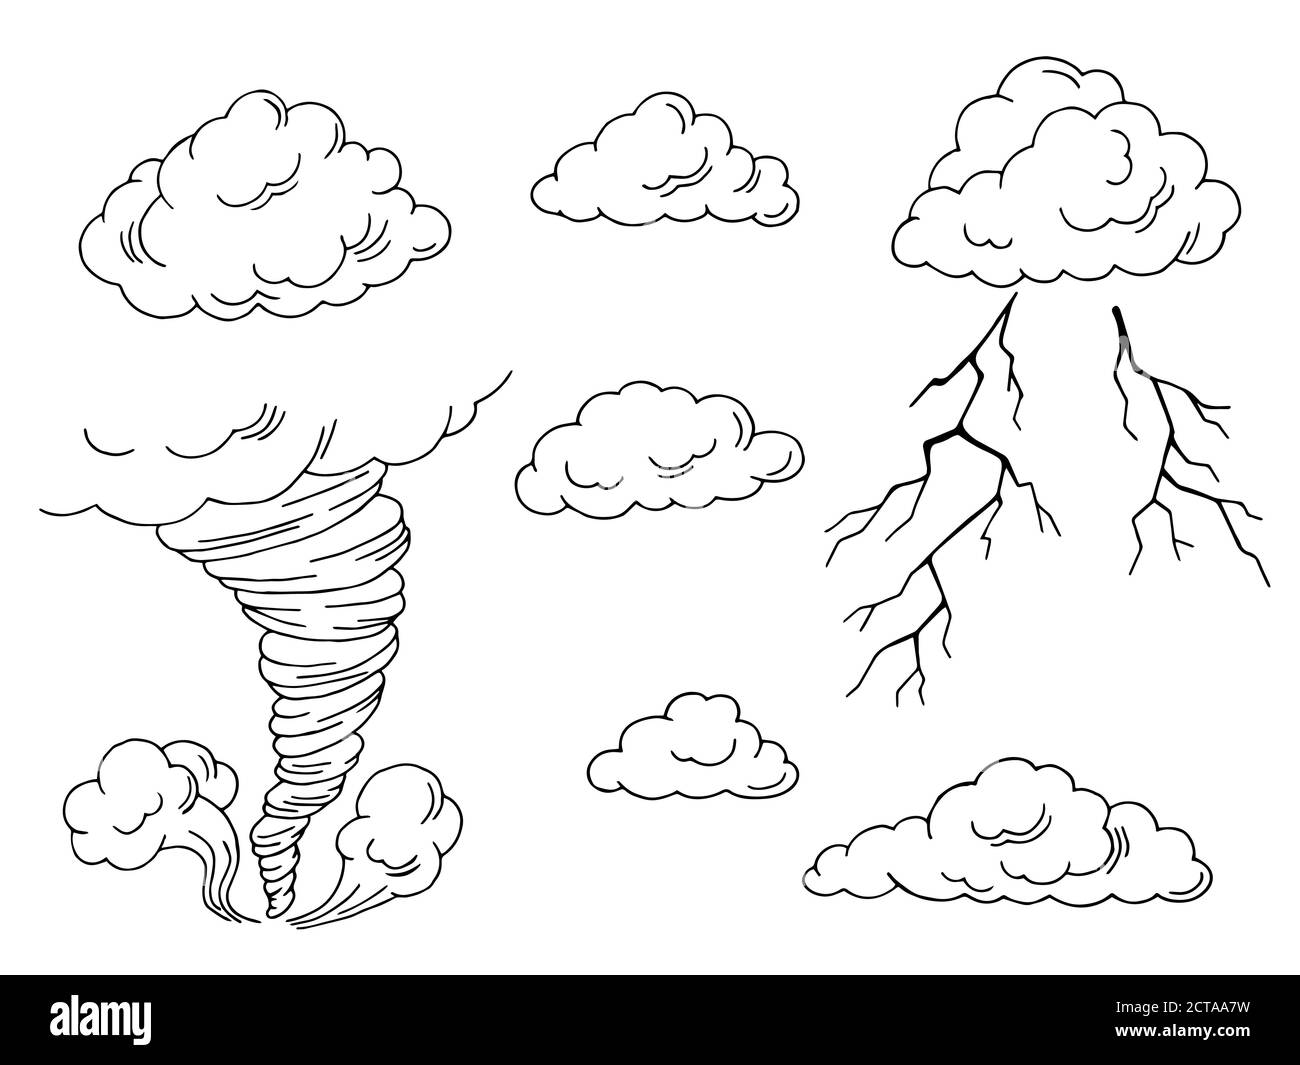 Wolken setzen Grafik Tornado Blitz schwarz weiß isoliert Illustration Vektor Stock Vektor